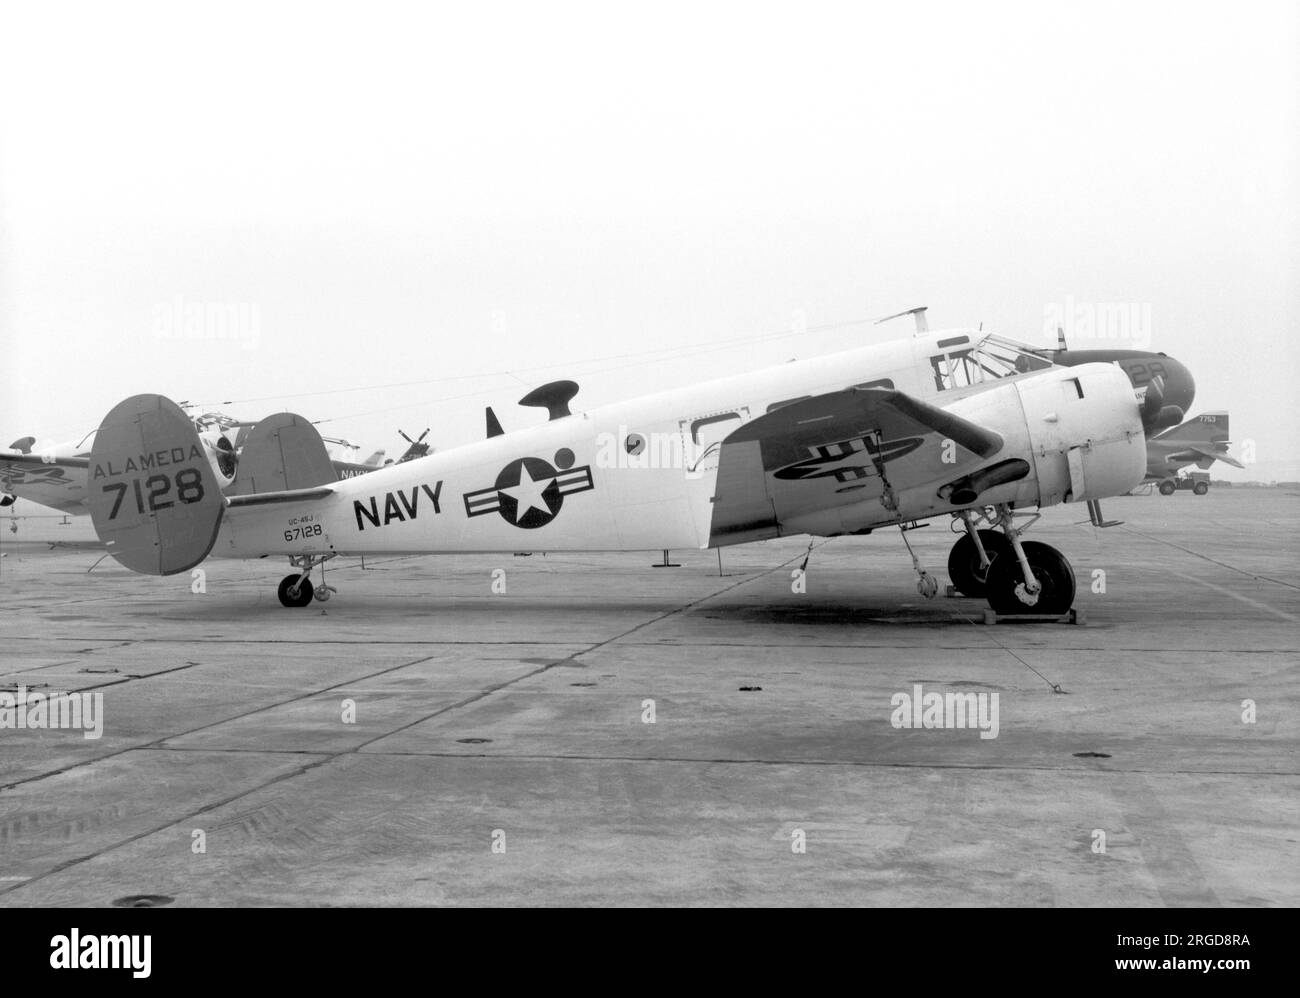 United States Navy - Beechcraft UC-45J 67128 (msn N-934), NAS Alameda am 4. November 1967. (Ehemals USAAF AT-7 41-21106 (MSN 1121) wurde 1946 an die US Navy übertragen. Wiederaufbereitet von Beech als JRB-5 (MSN N-309) Feb. 1949. Wiederaufbereitet von Beech als SNB-5 (MSN N-934, Juni 1952). Stockfoto